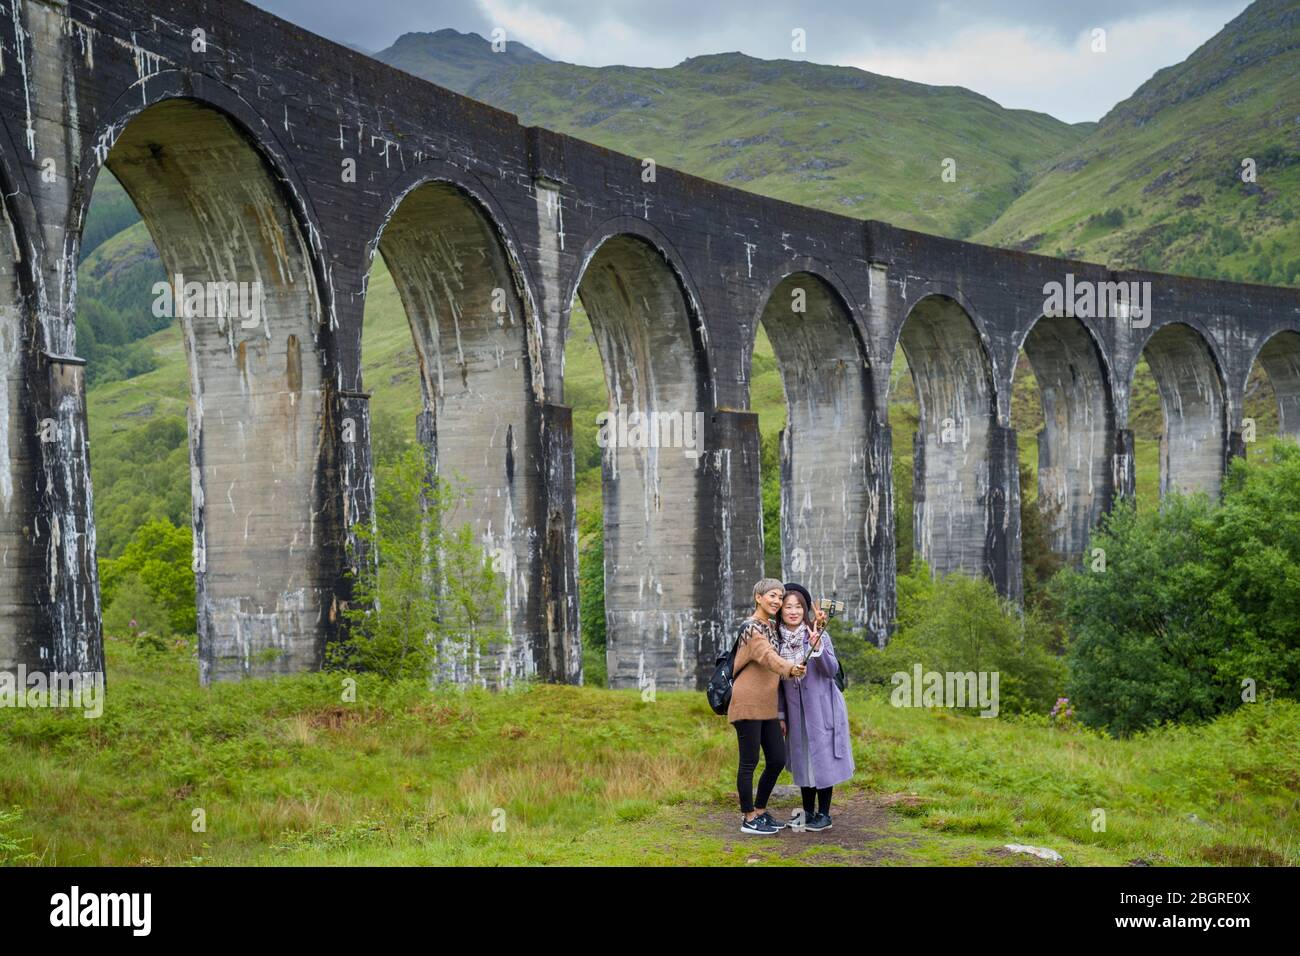 Touristes se posant pour selfies dans le célèbre quartier touristique de Glenfinnan Viaduct dans les Highlands d'Ecosse Banque D'Images